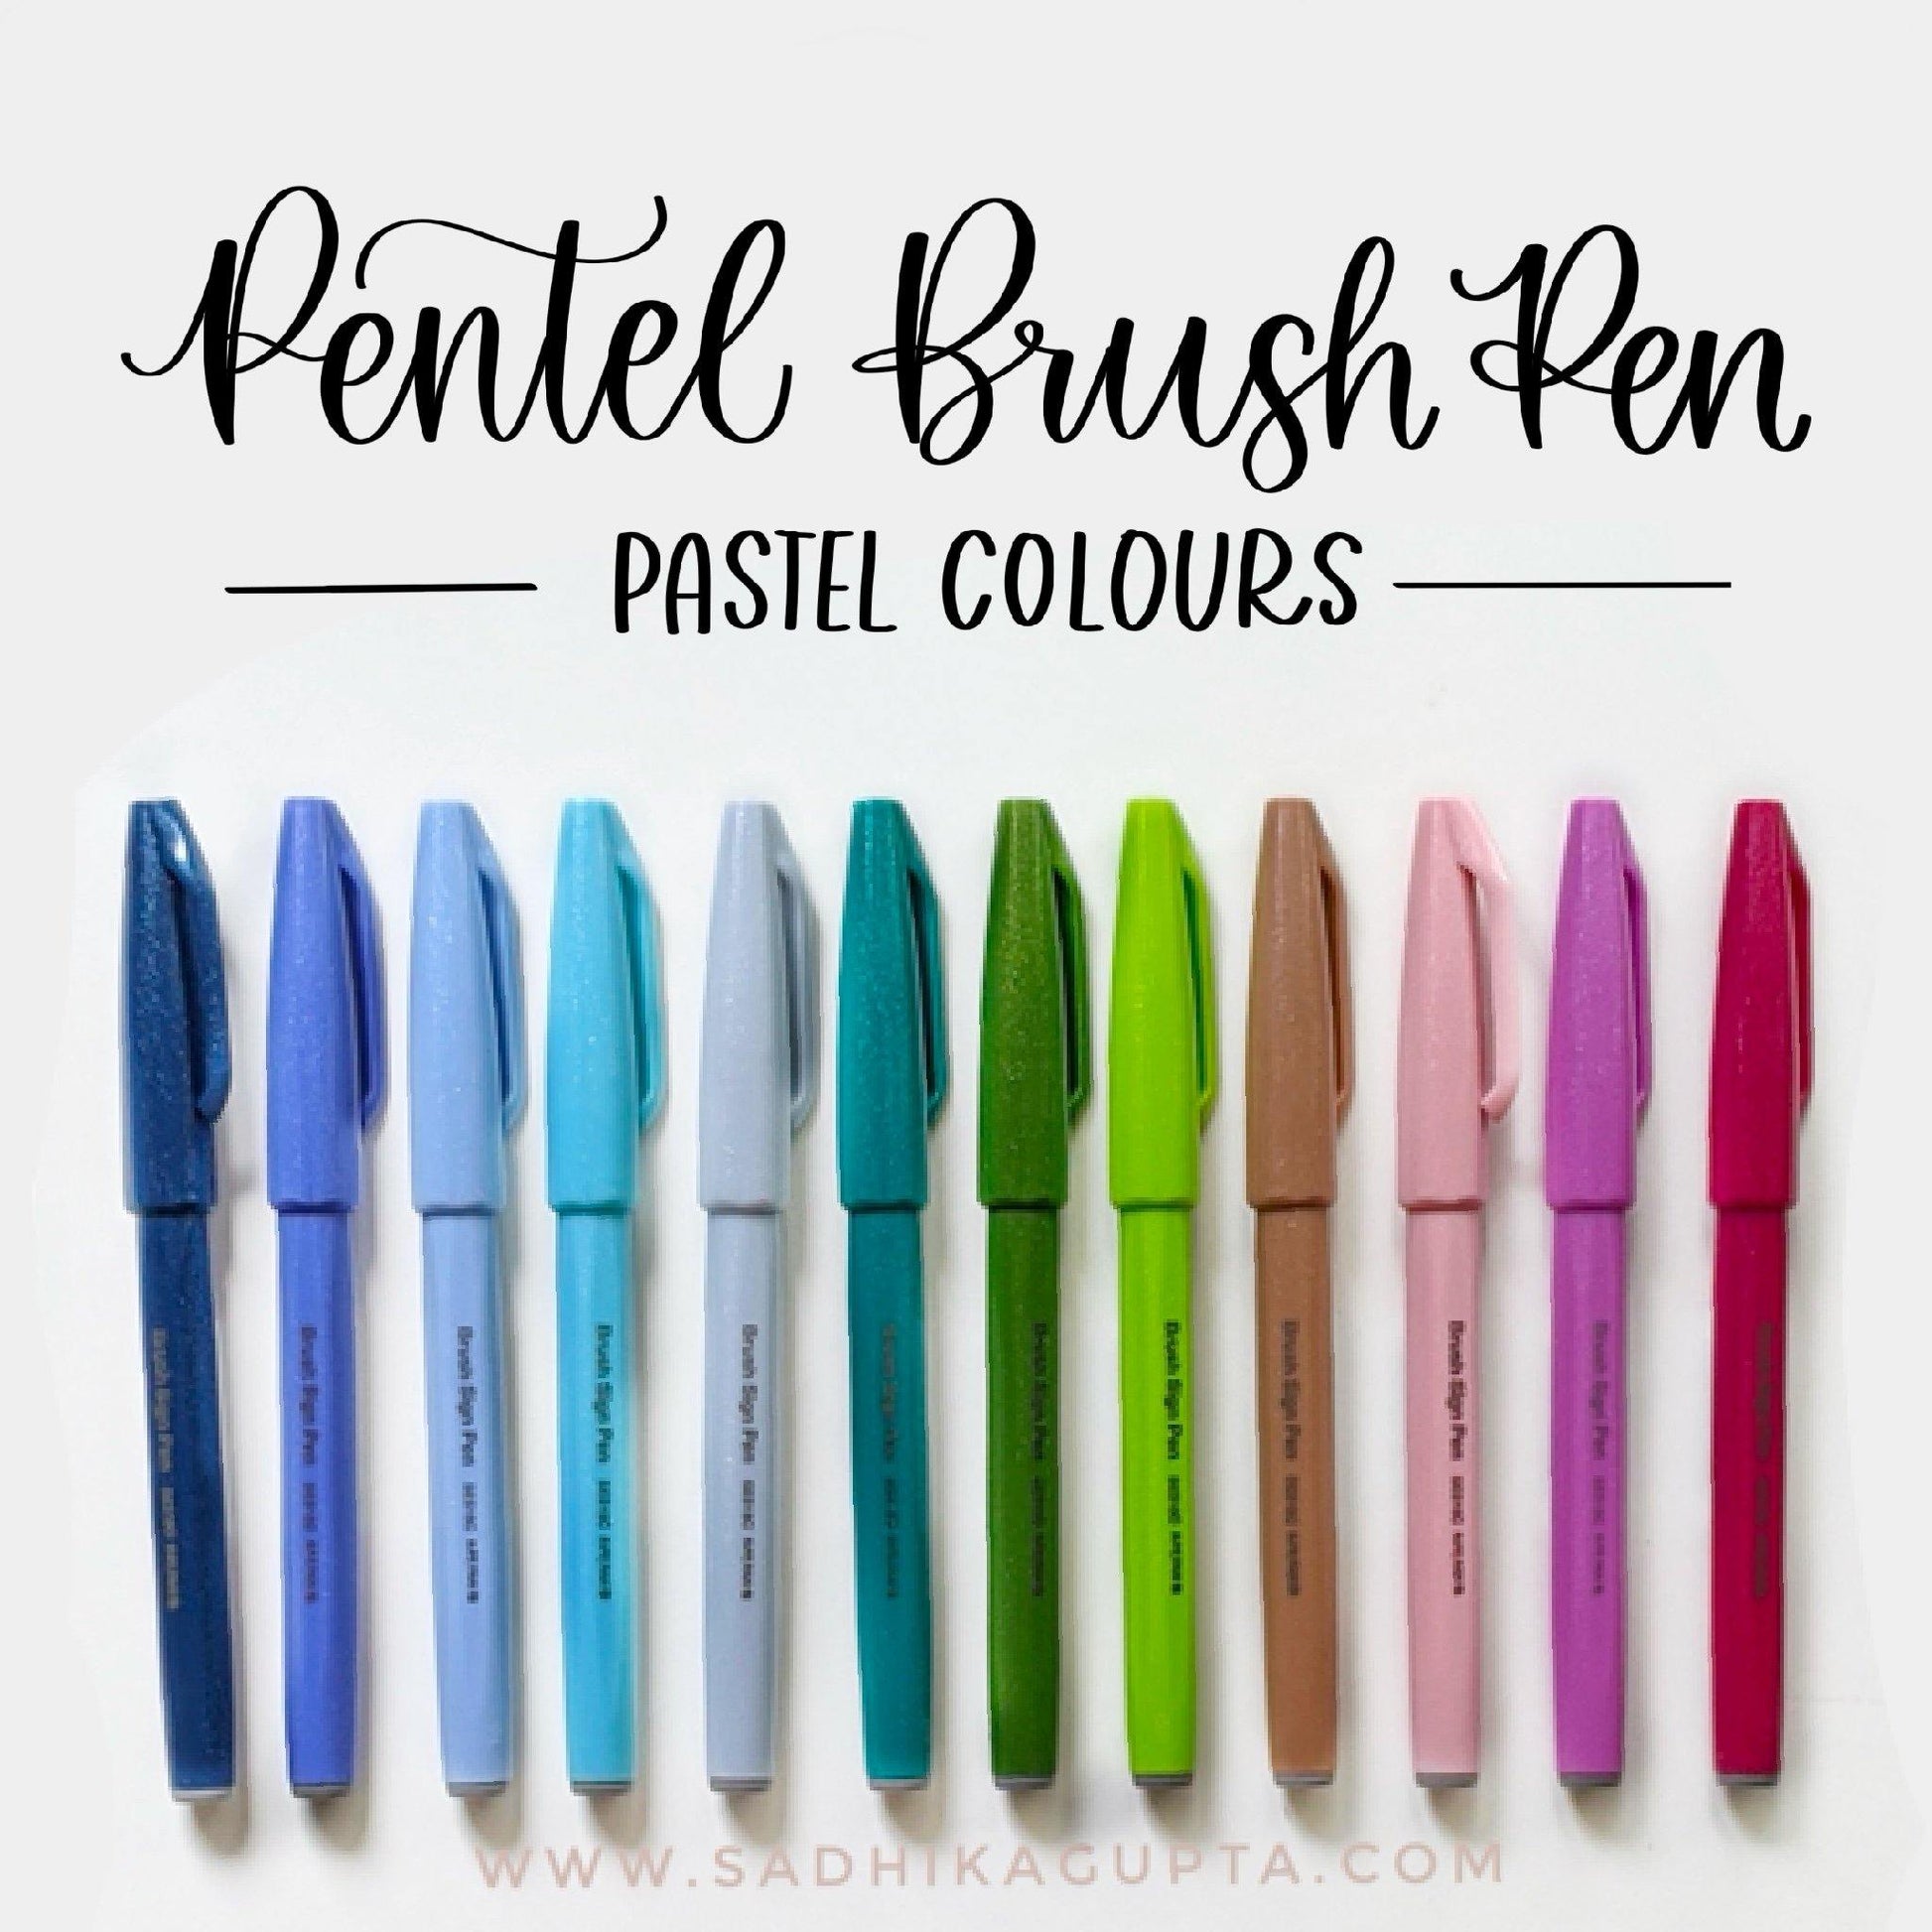 Pentel Brush Sign Pen - Set of 12 Pastels, Delhi Doodler